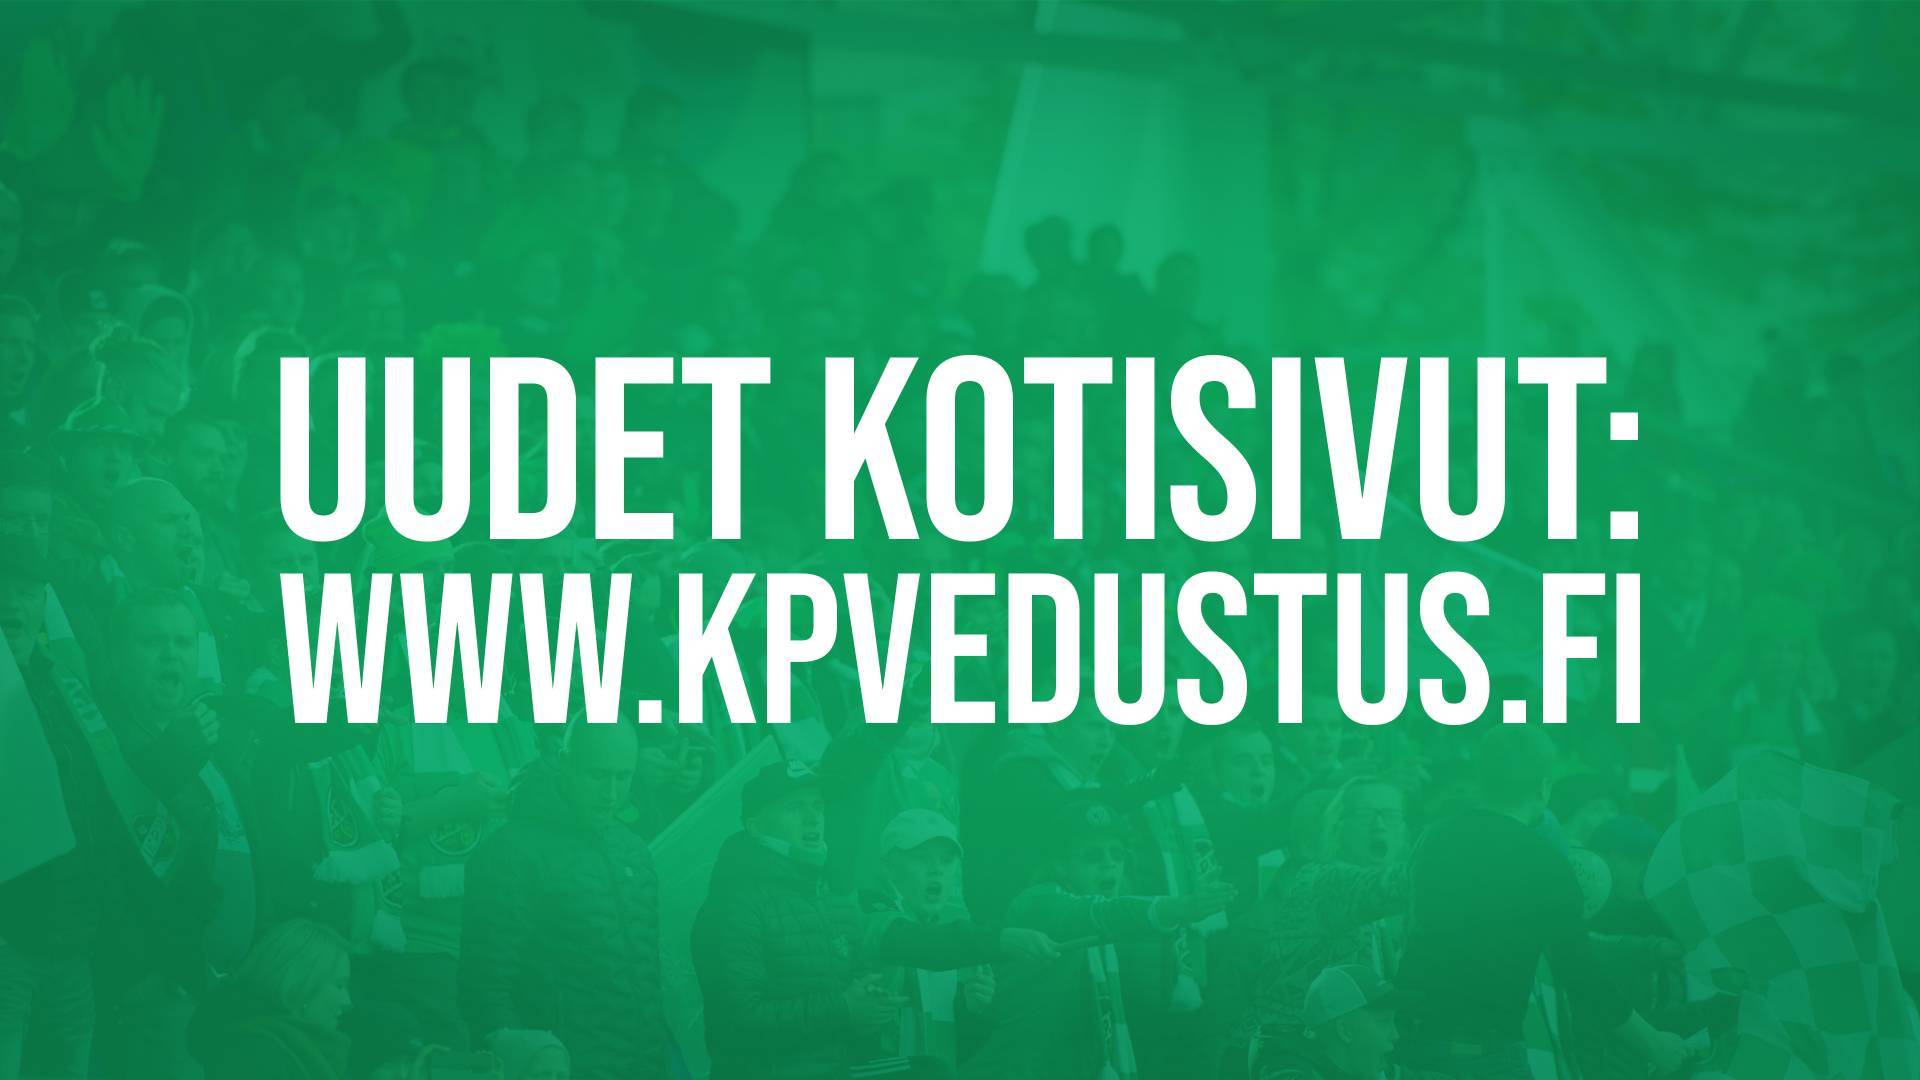 Edustusjoukkue avaa uudet sivut osoitteeseen www.kpvedustus.fi!